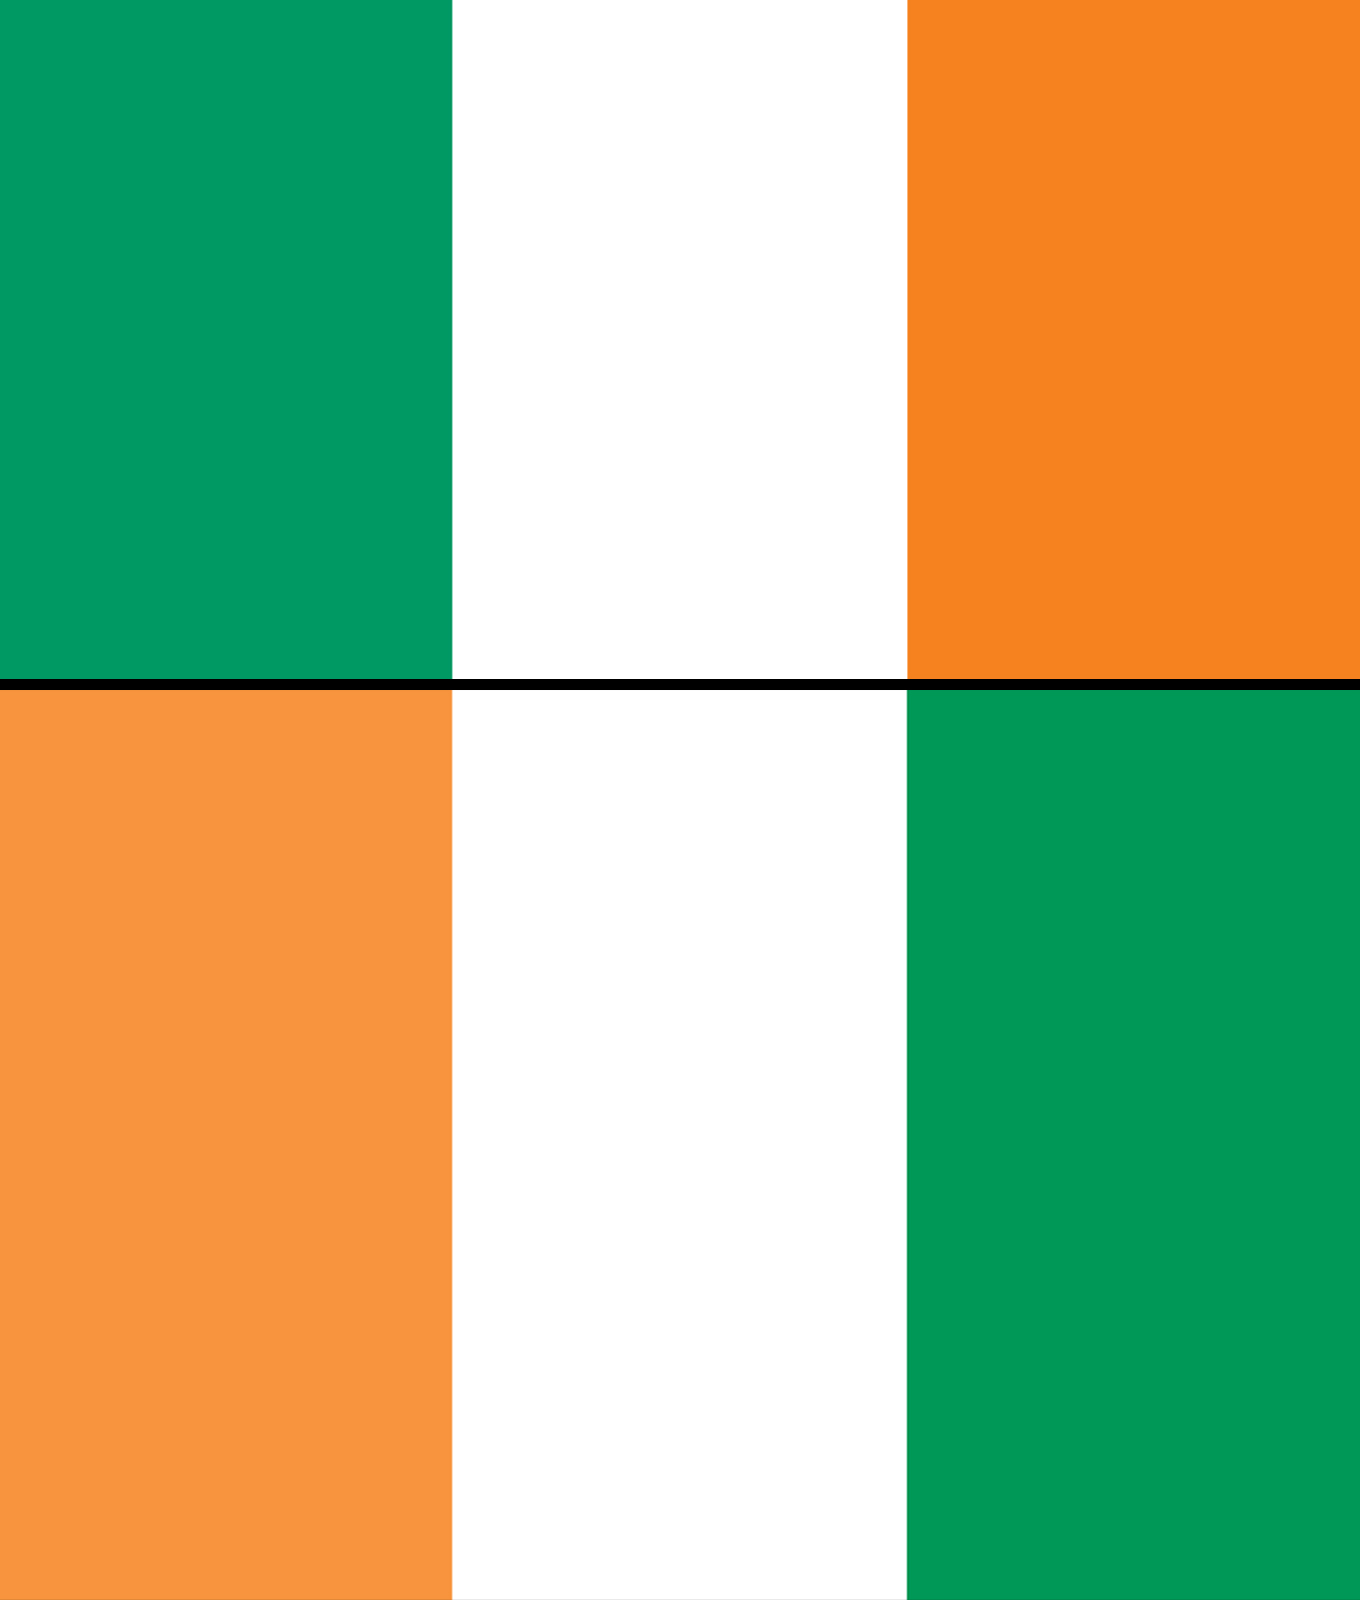 Флаг зеленый желтый зеленый вертикально. Флаг Ирландии 1918. Флаг Ирландии и кот ДИВУАР. Кот д'Ивуар флаг и Ирландия. Оранжевый белый зеленый.